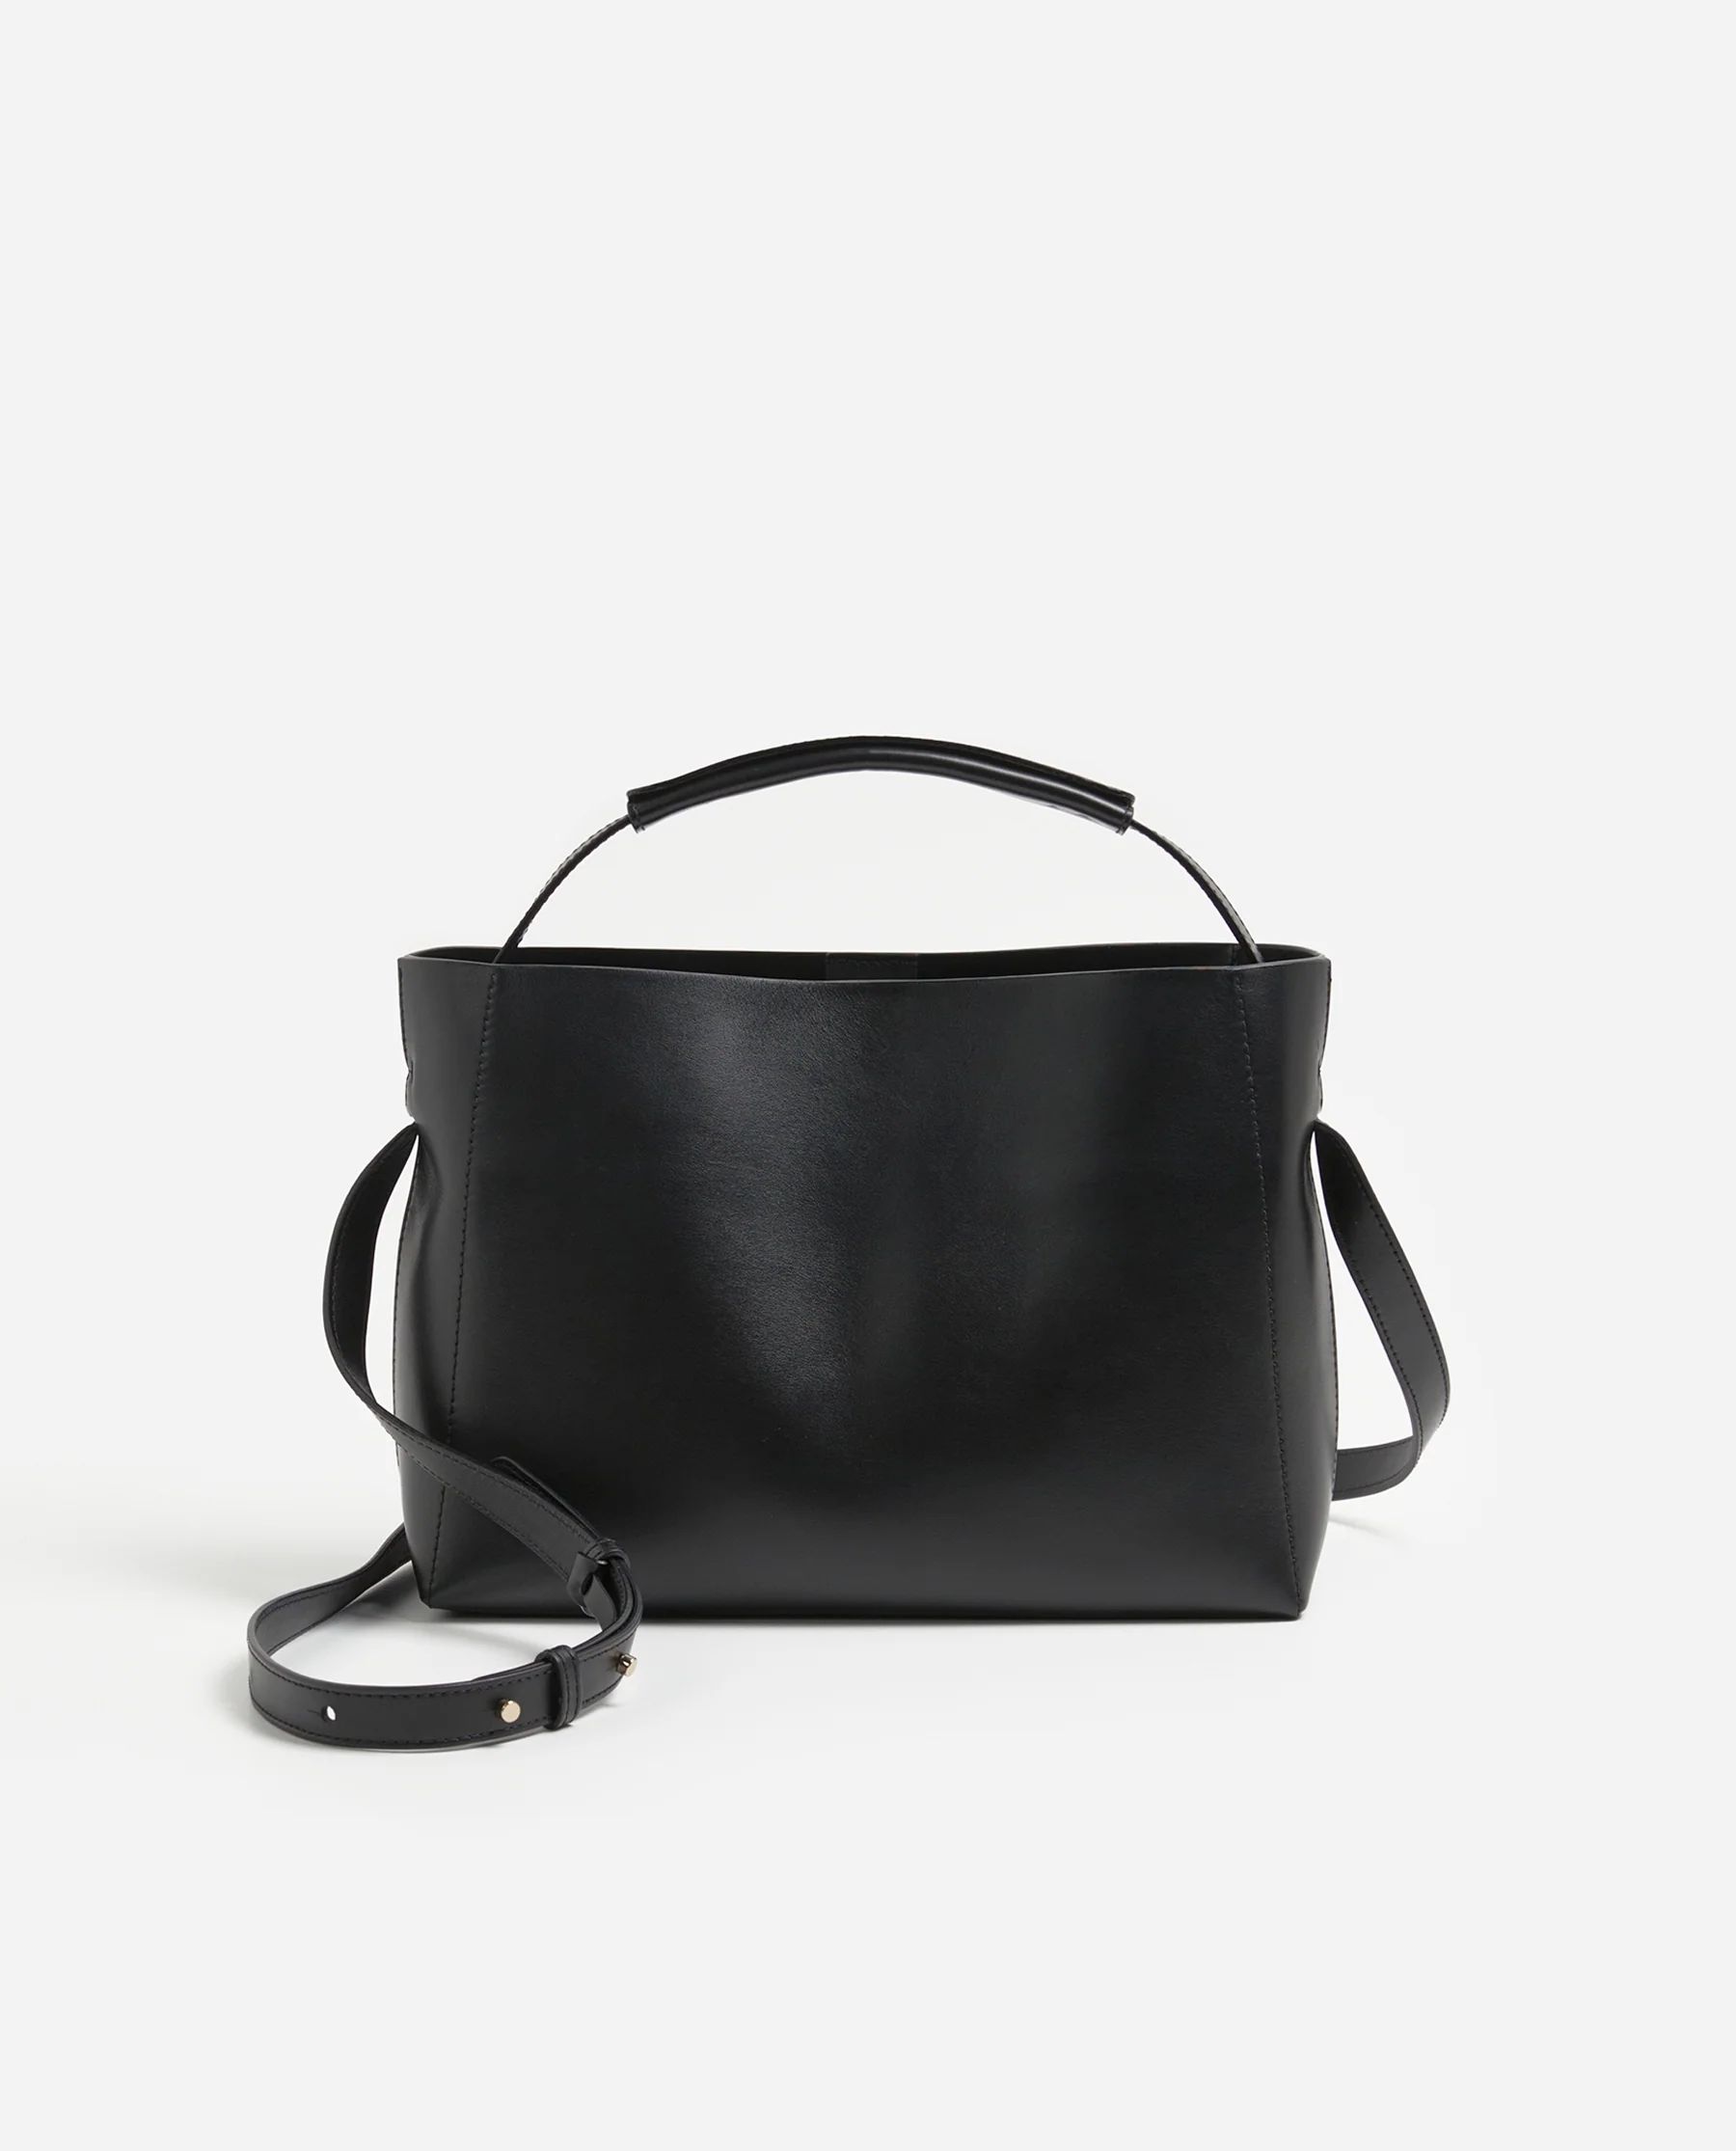 Hedda Grande Handbag Leather Black | Flattered